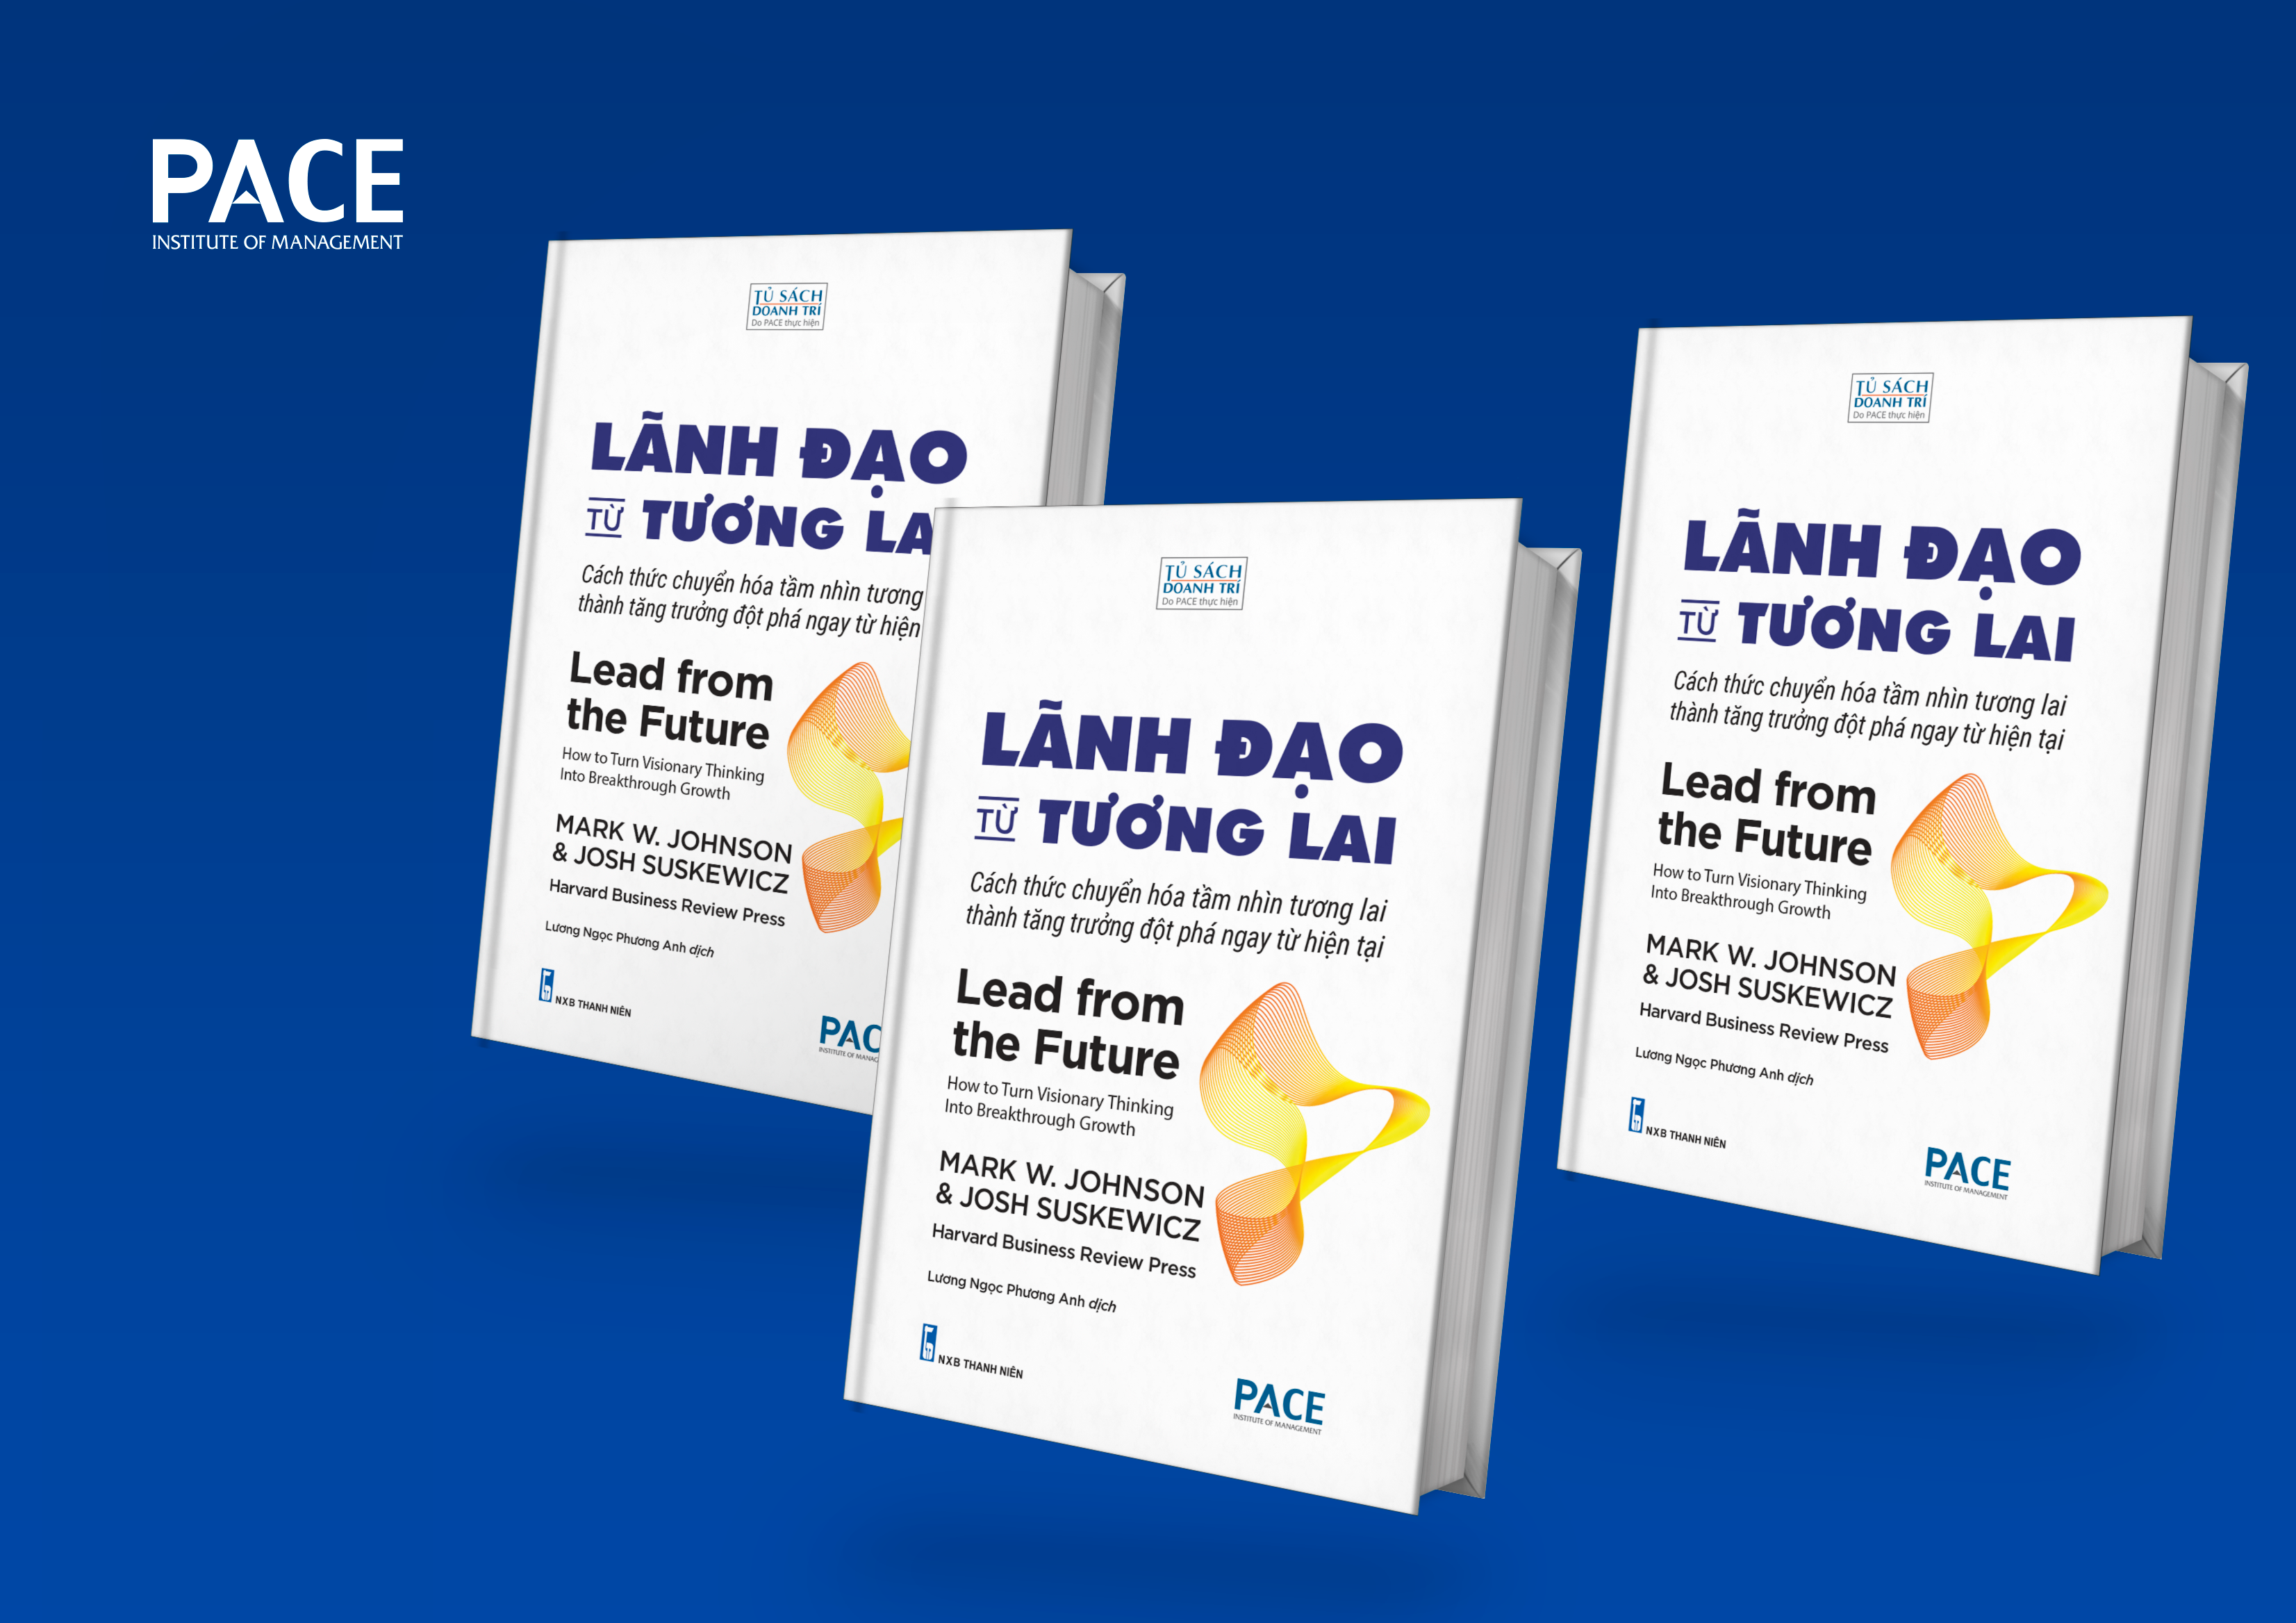 LÃNH ĐẠO TỪ TƯƠNG LAI (Lead from the Future) - Lương Ngọc Phương Anh dịch - (bìa cứng)